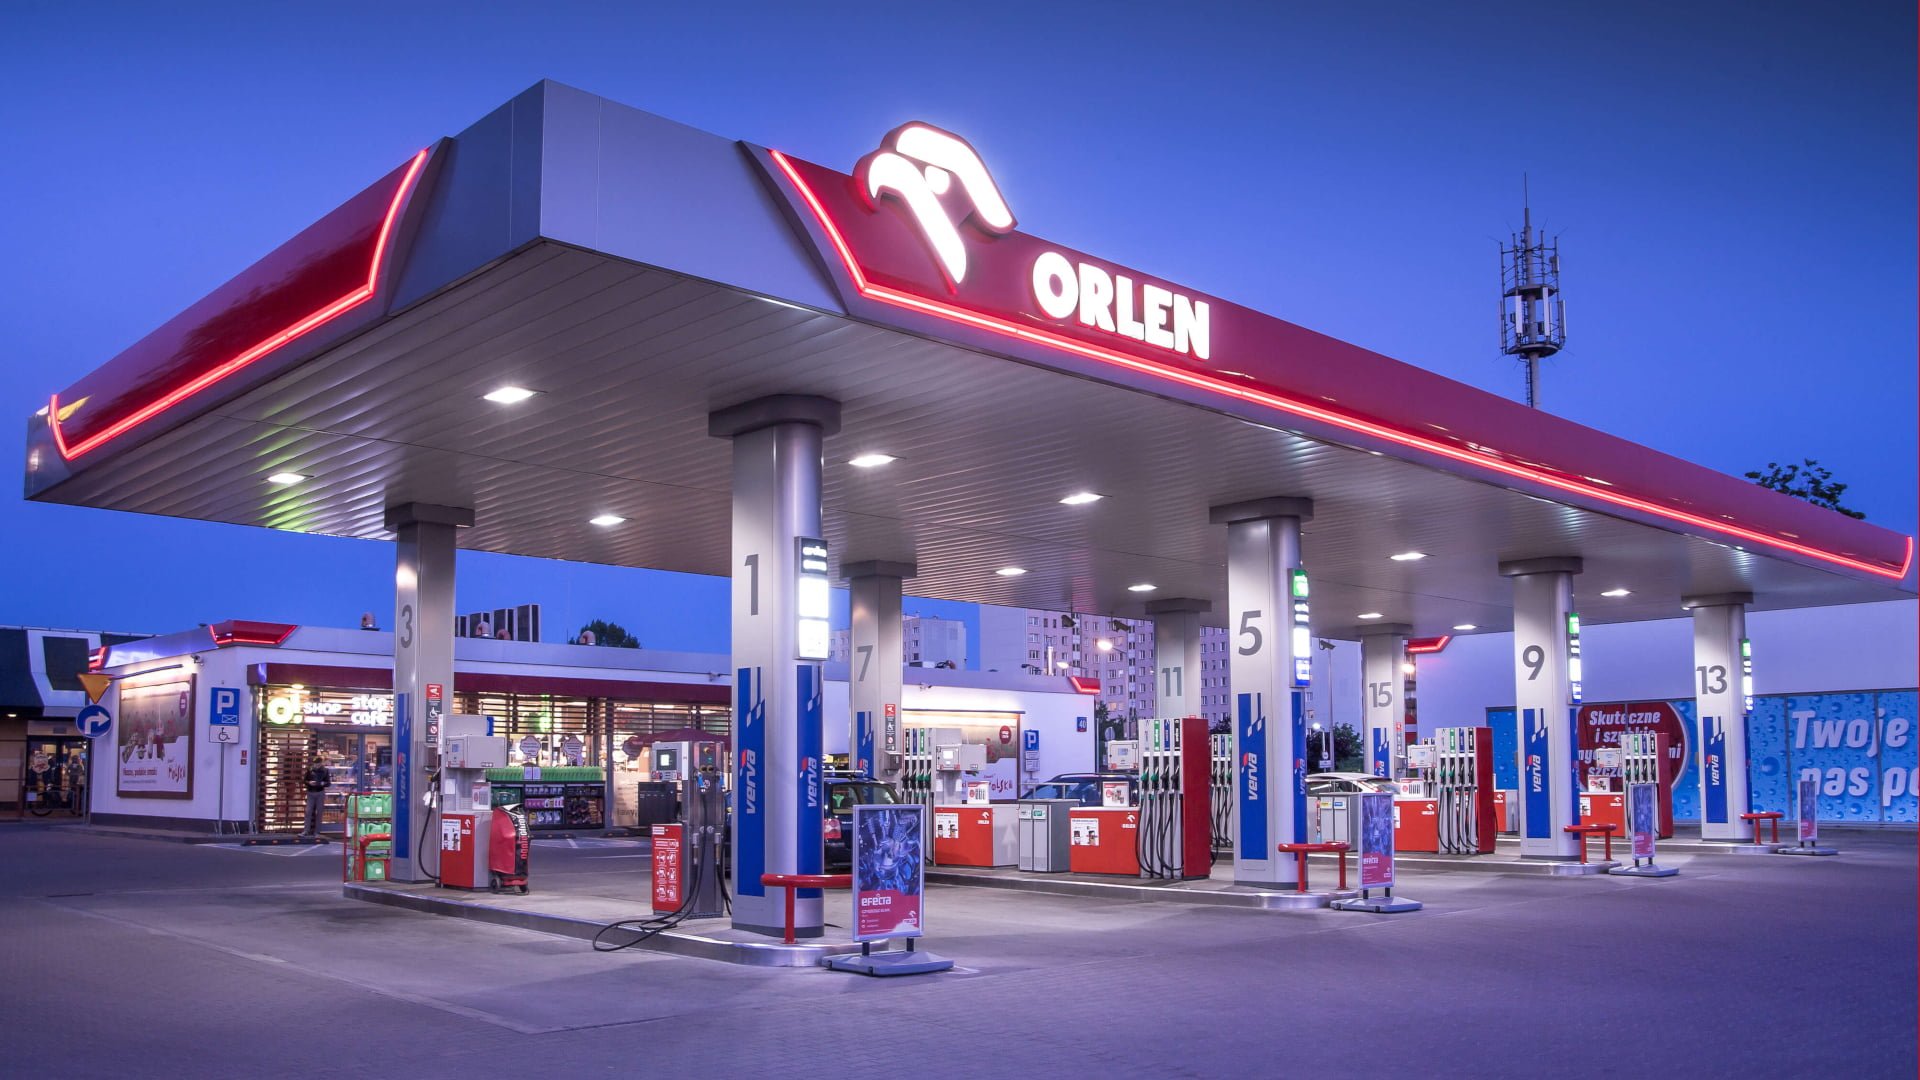 Stacja benzynowa Orlen o zmierzchu, z dystrybutorami paliwa i sklepem.